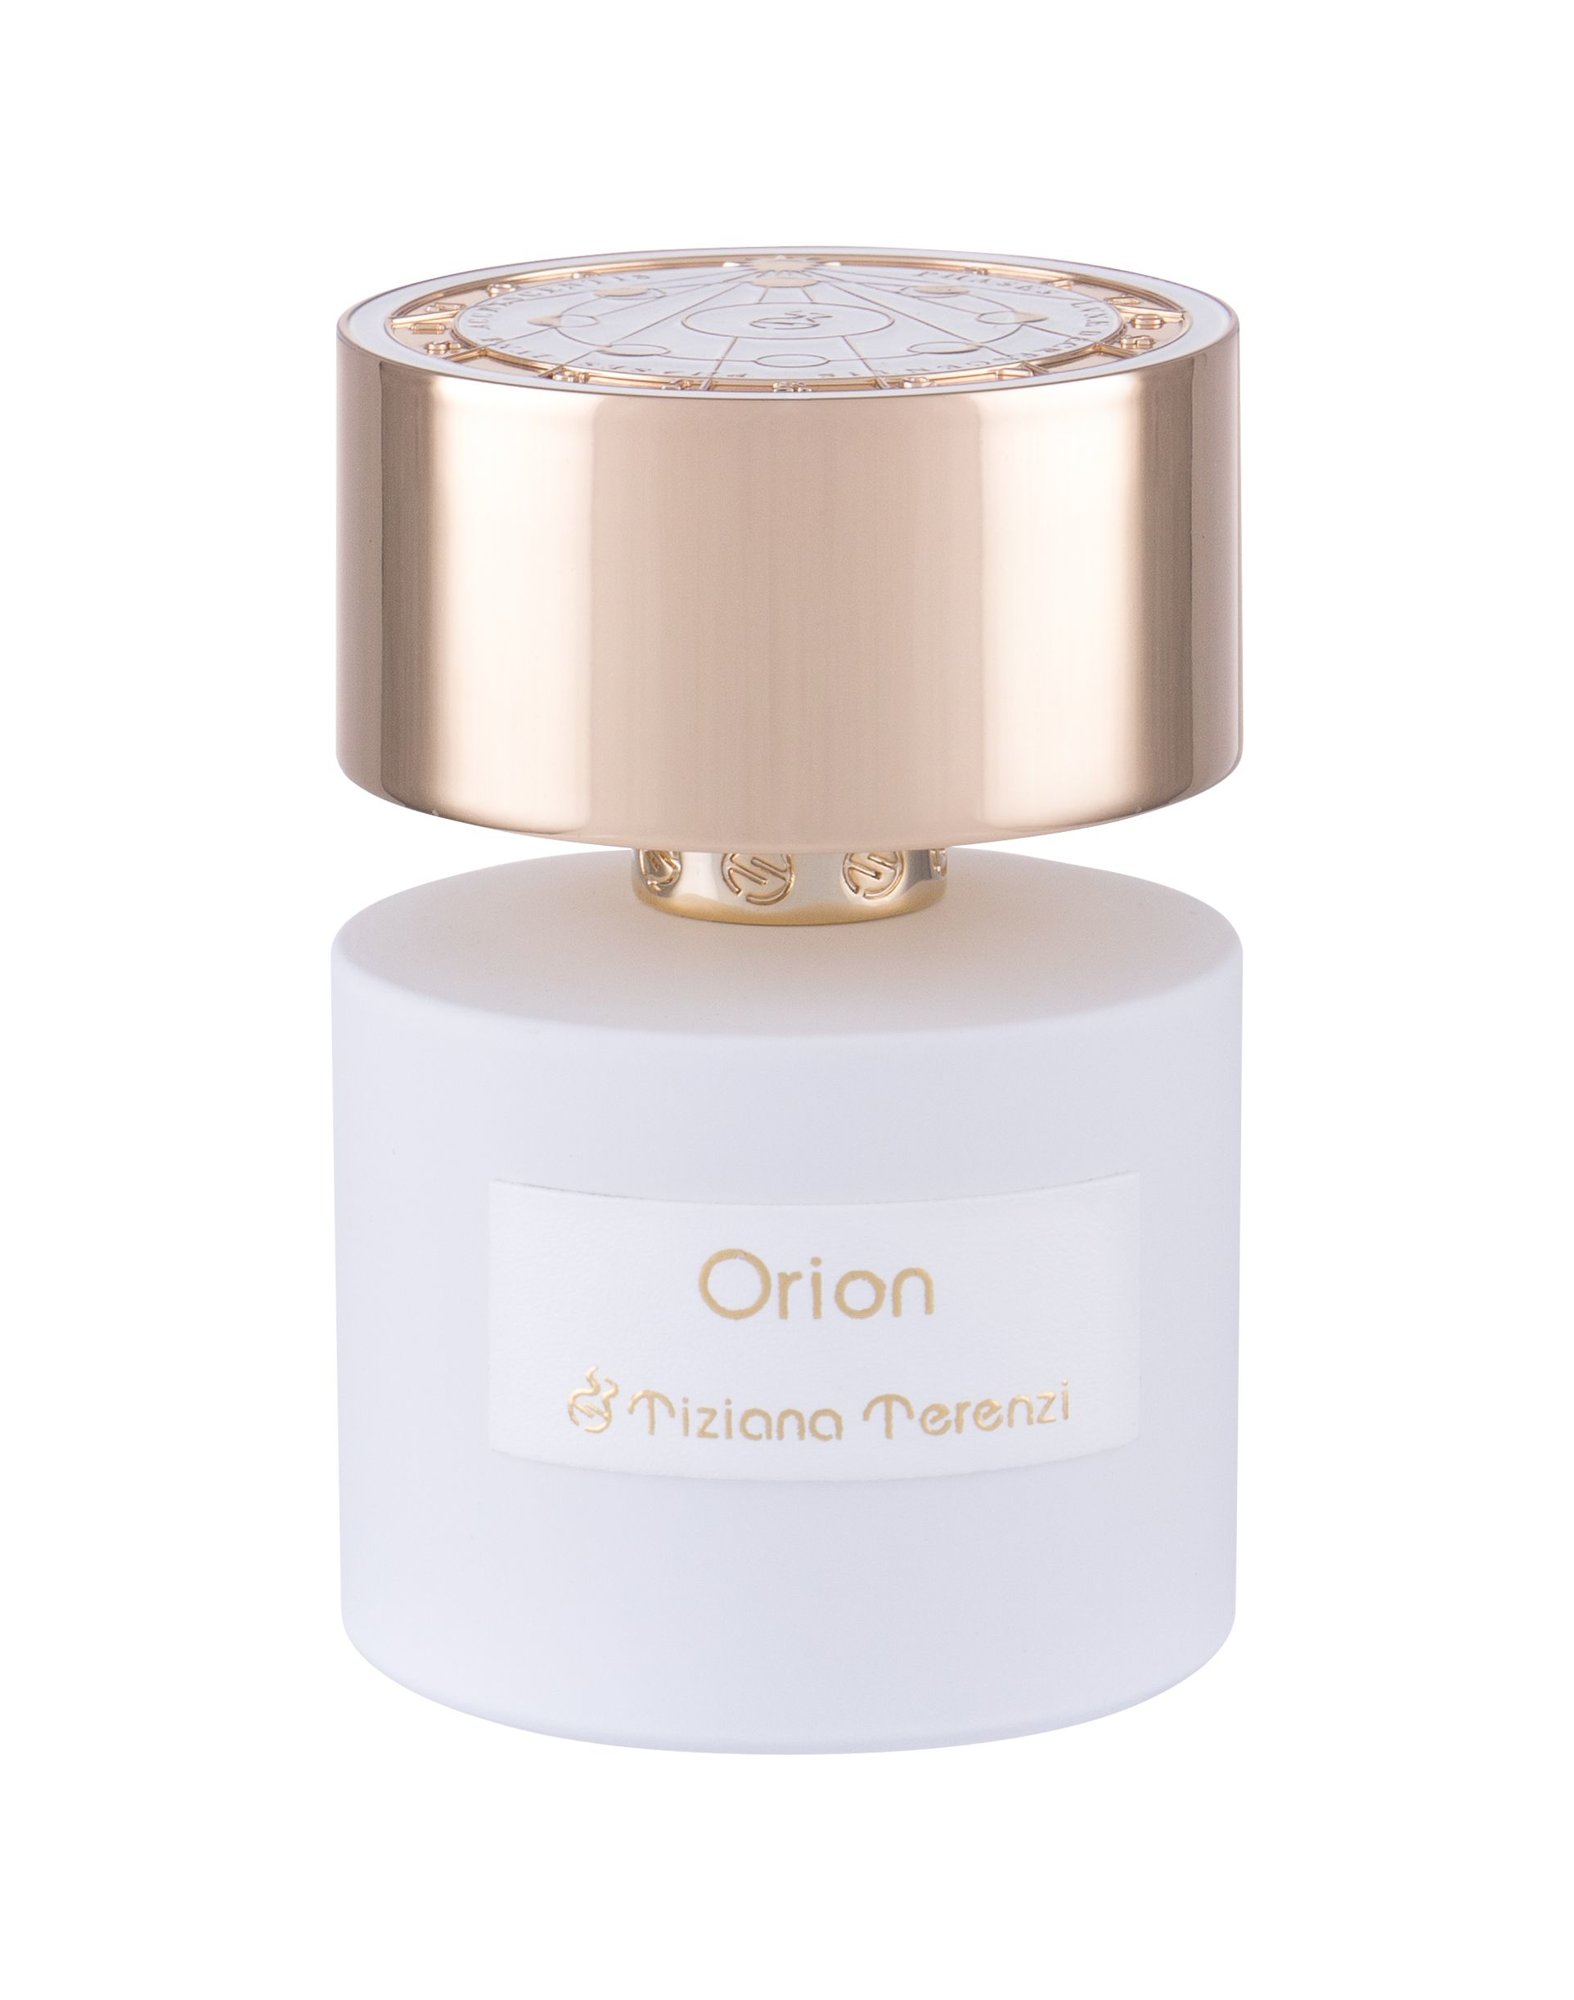 Tiziana Terenzi Orion 10 ml NIŠINIAI kvepalų mėginukas (atomaizeris) Unisex Parfum